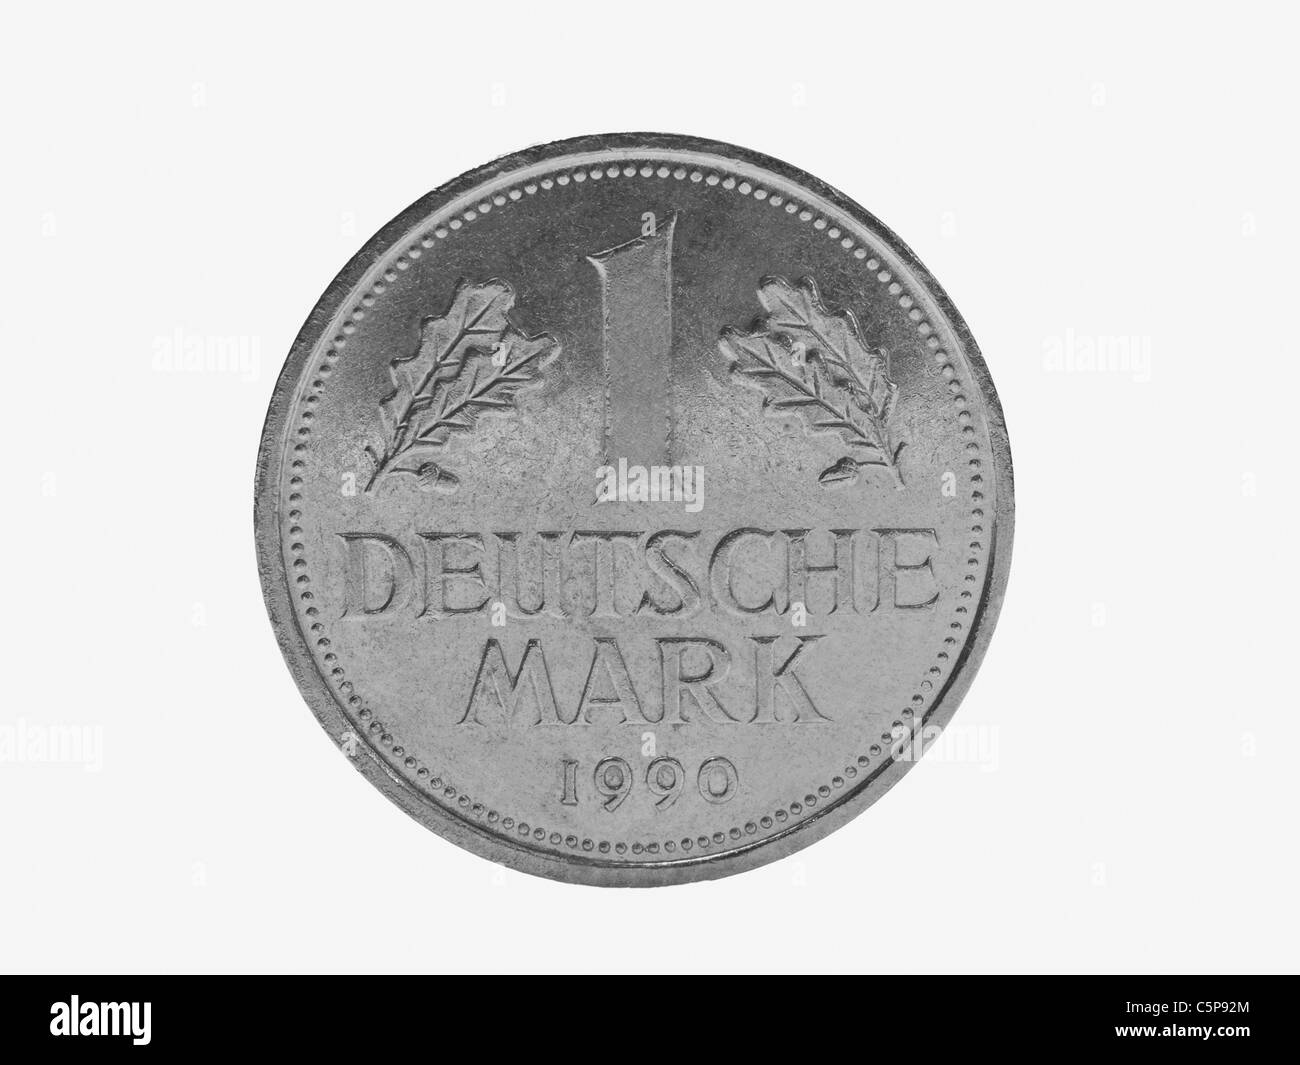 Detailansicht einer ein D-Mark Münze | photo détail d'une pièce de marque allemande Banque D'Images